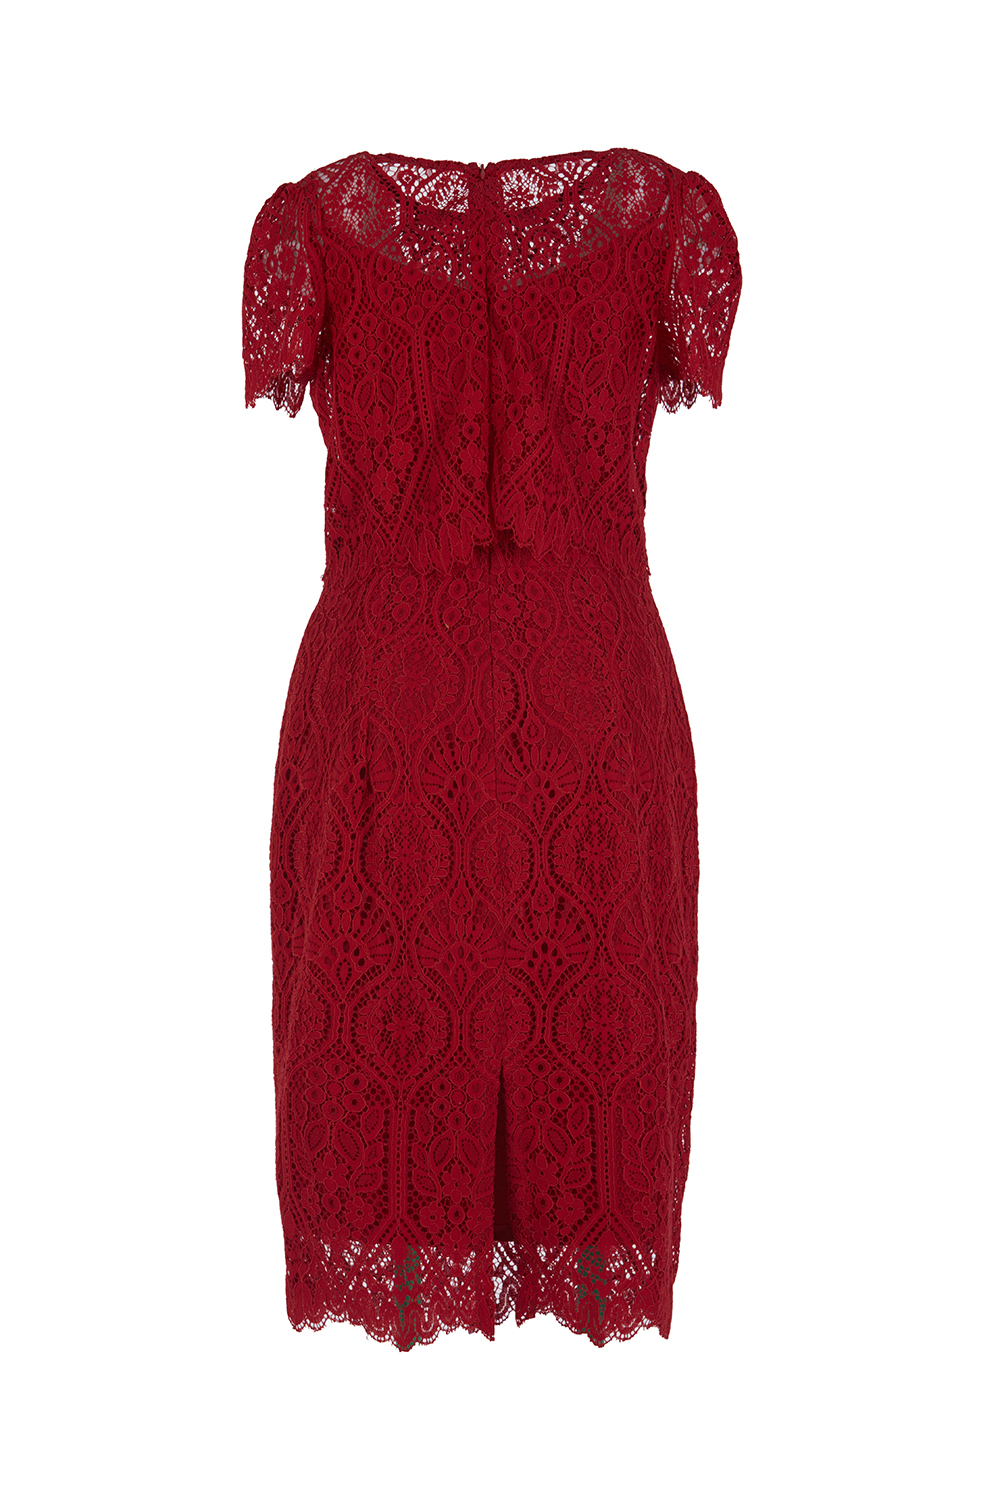 Đầm nhung phối ren đỏ đính nơ | Thương hiệu thời trang công sở cho phái đẹp